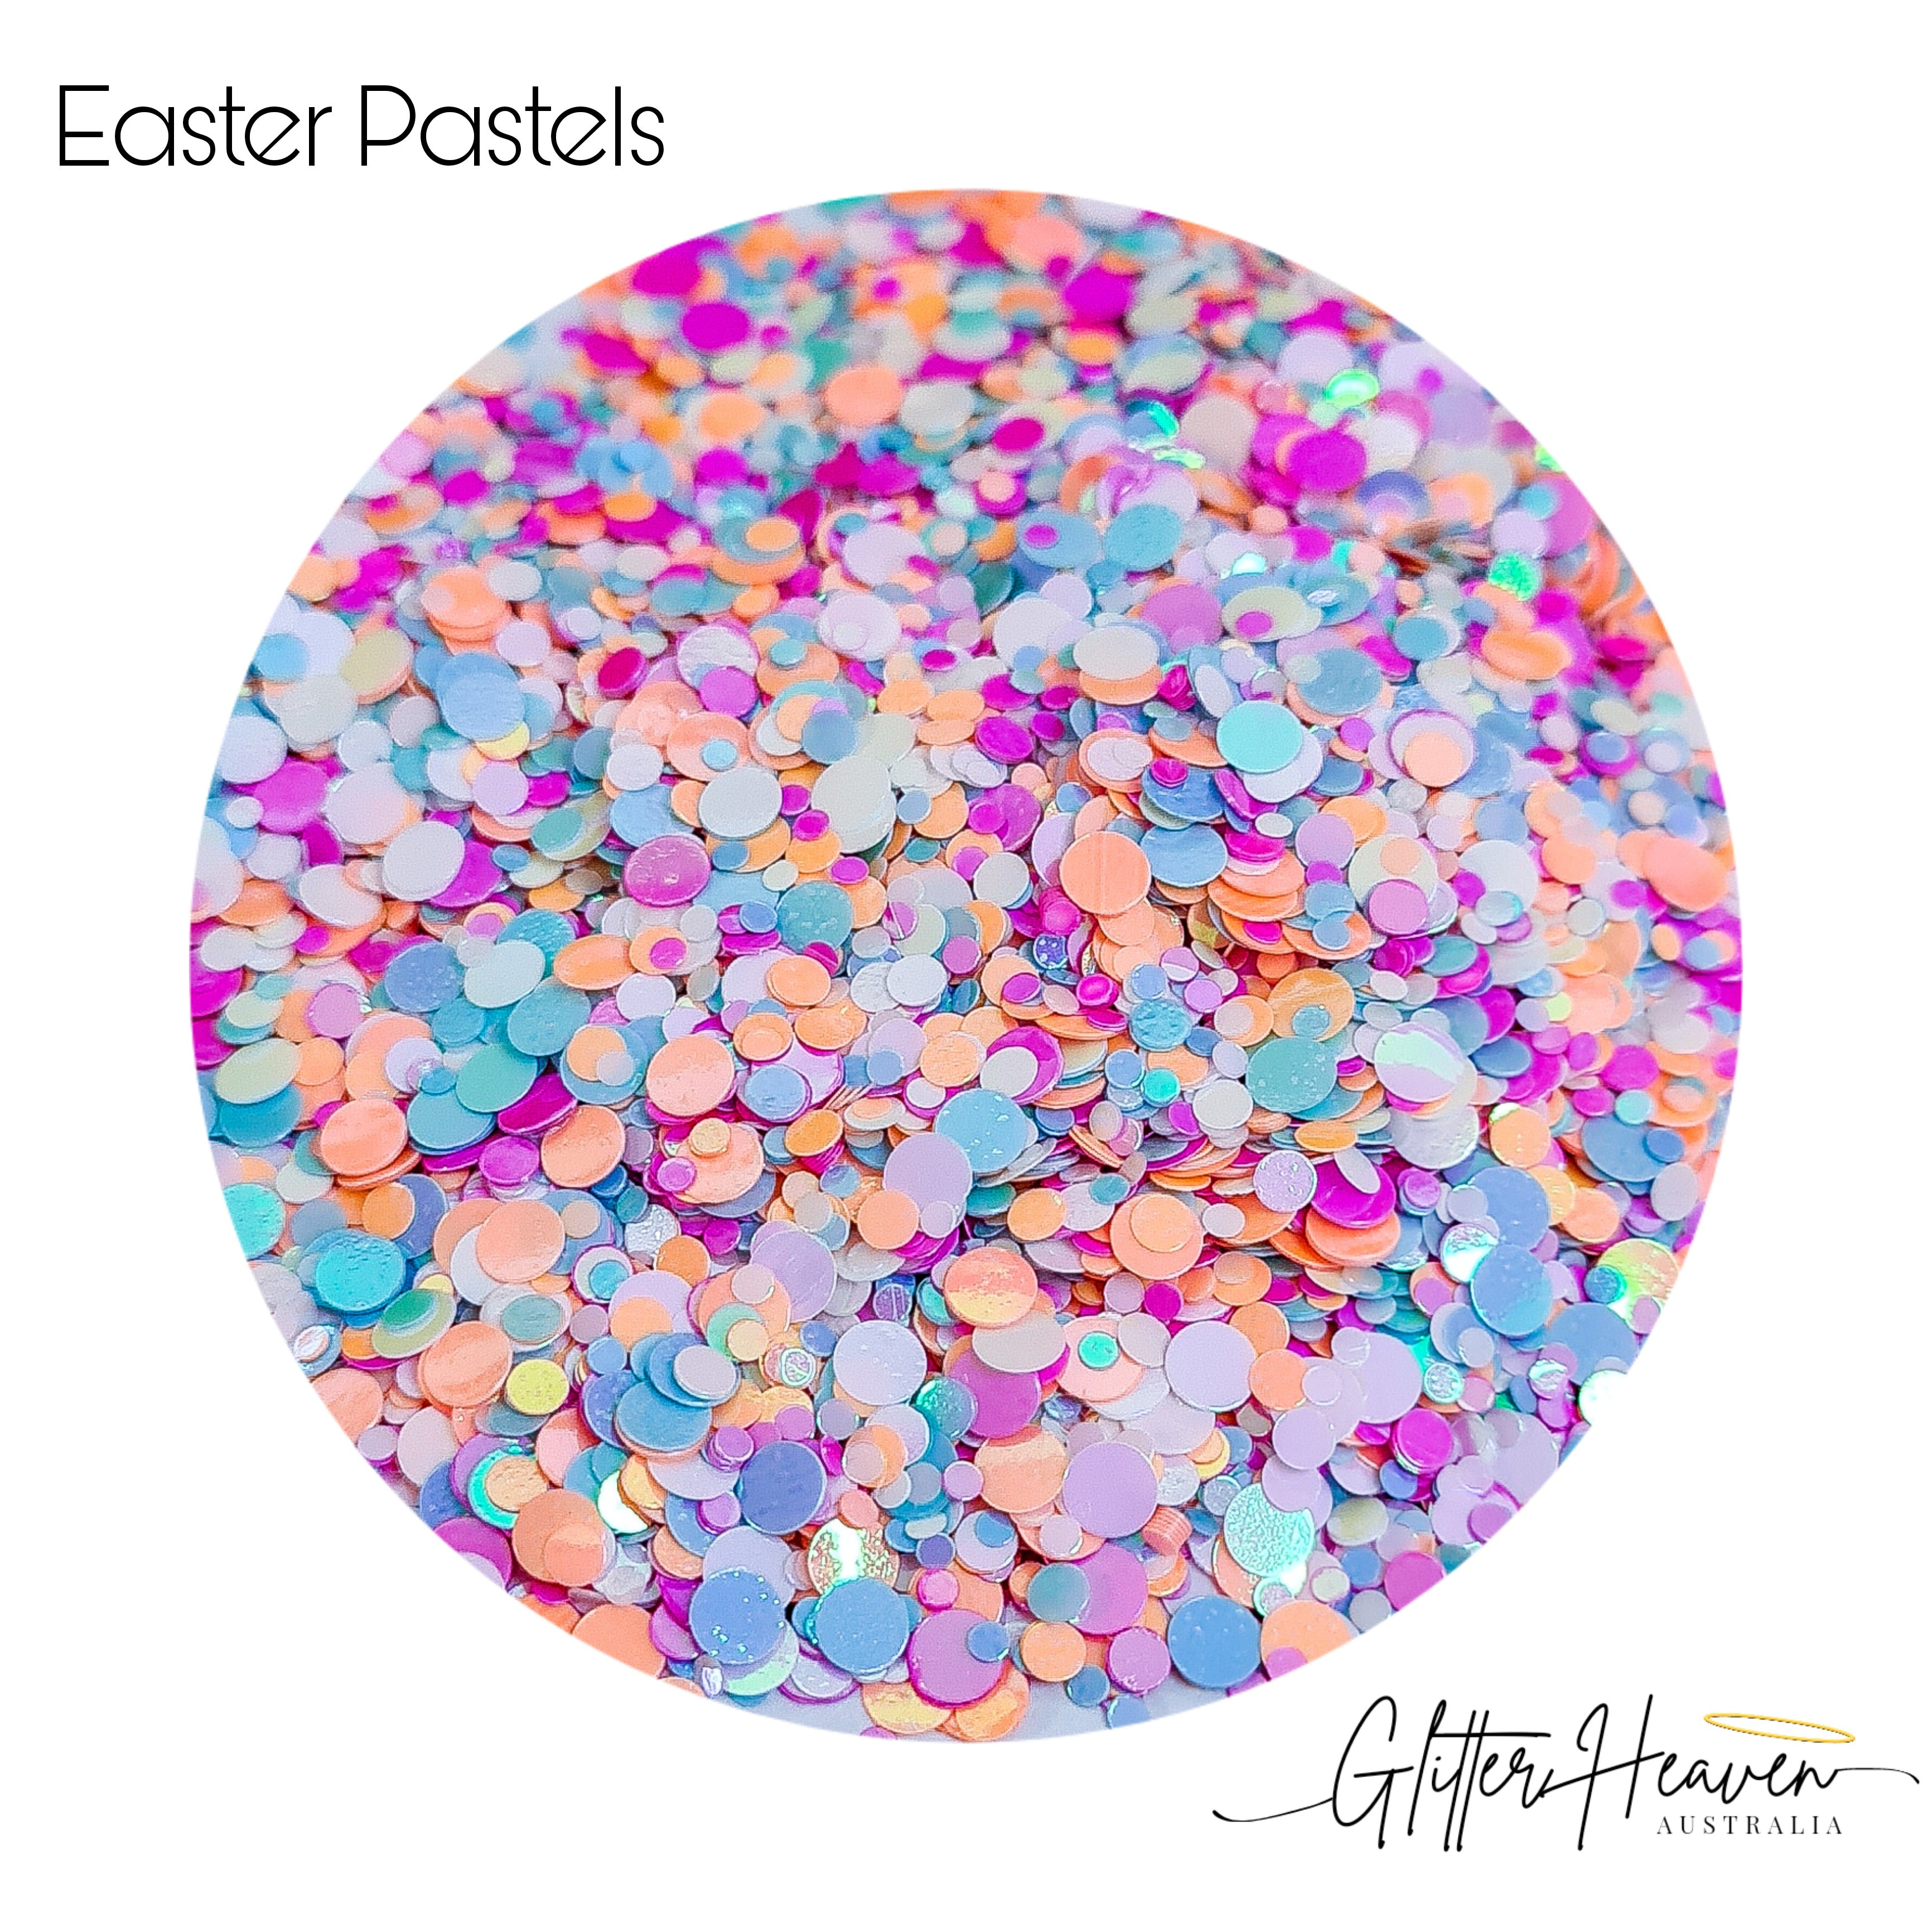 Easter Pastels